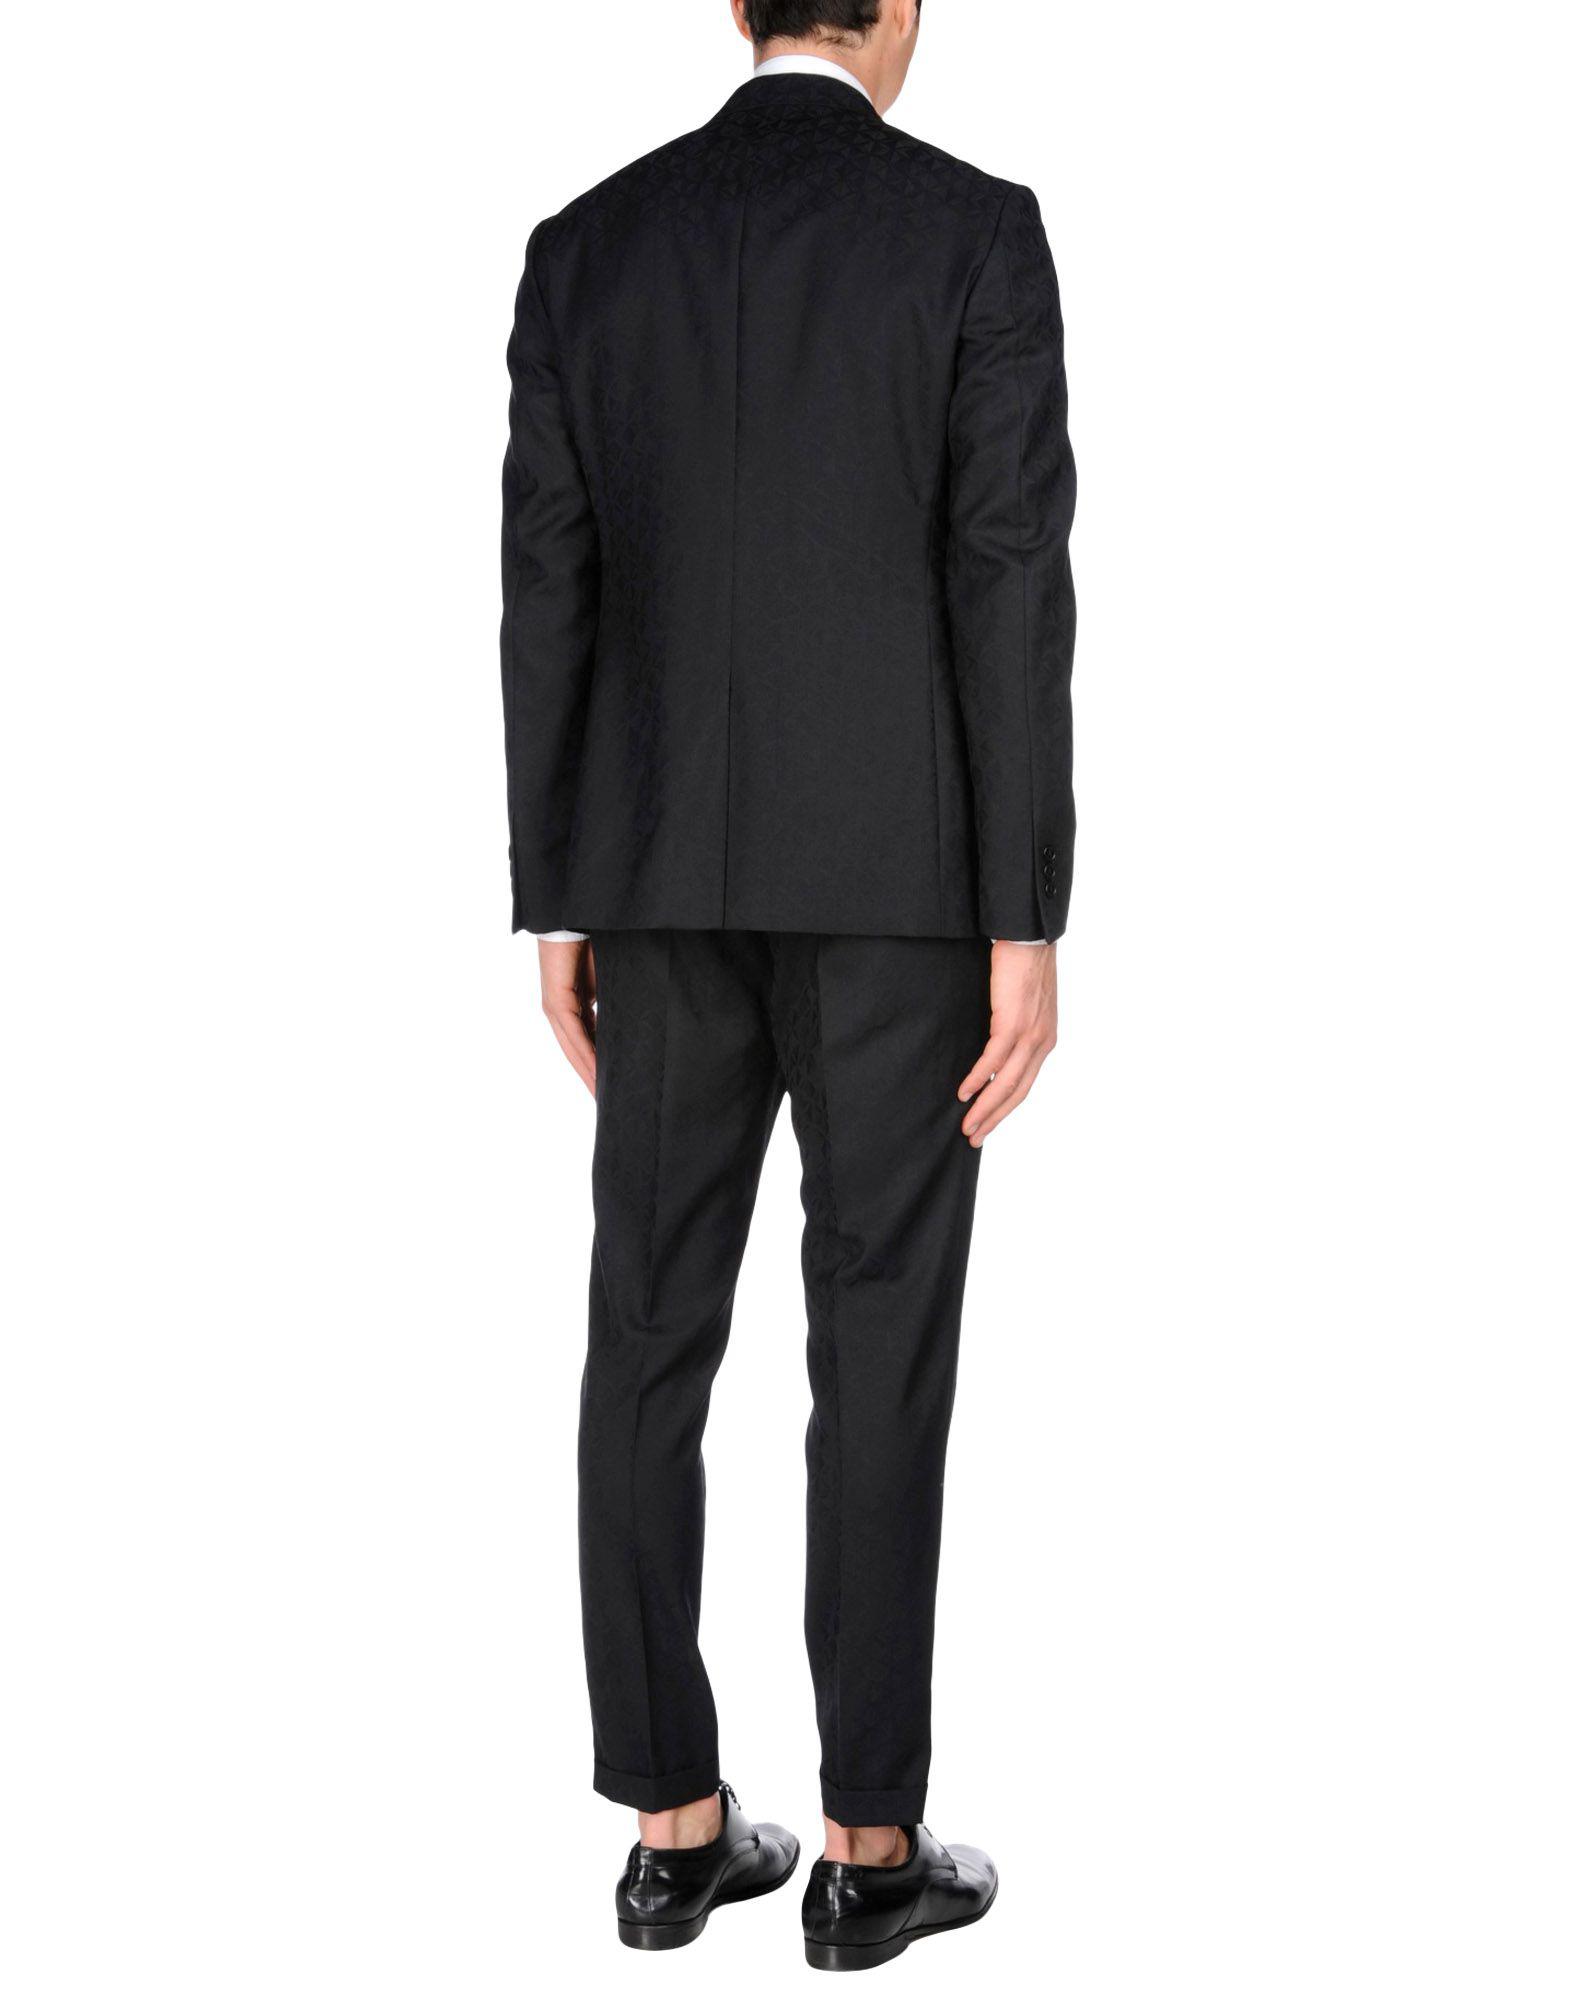 Lyst - Versace Suit in Black for Men